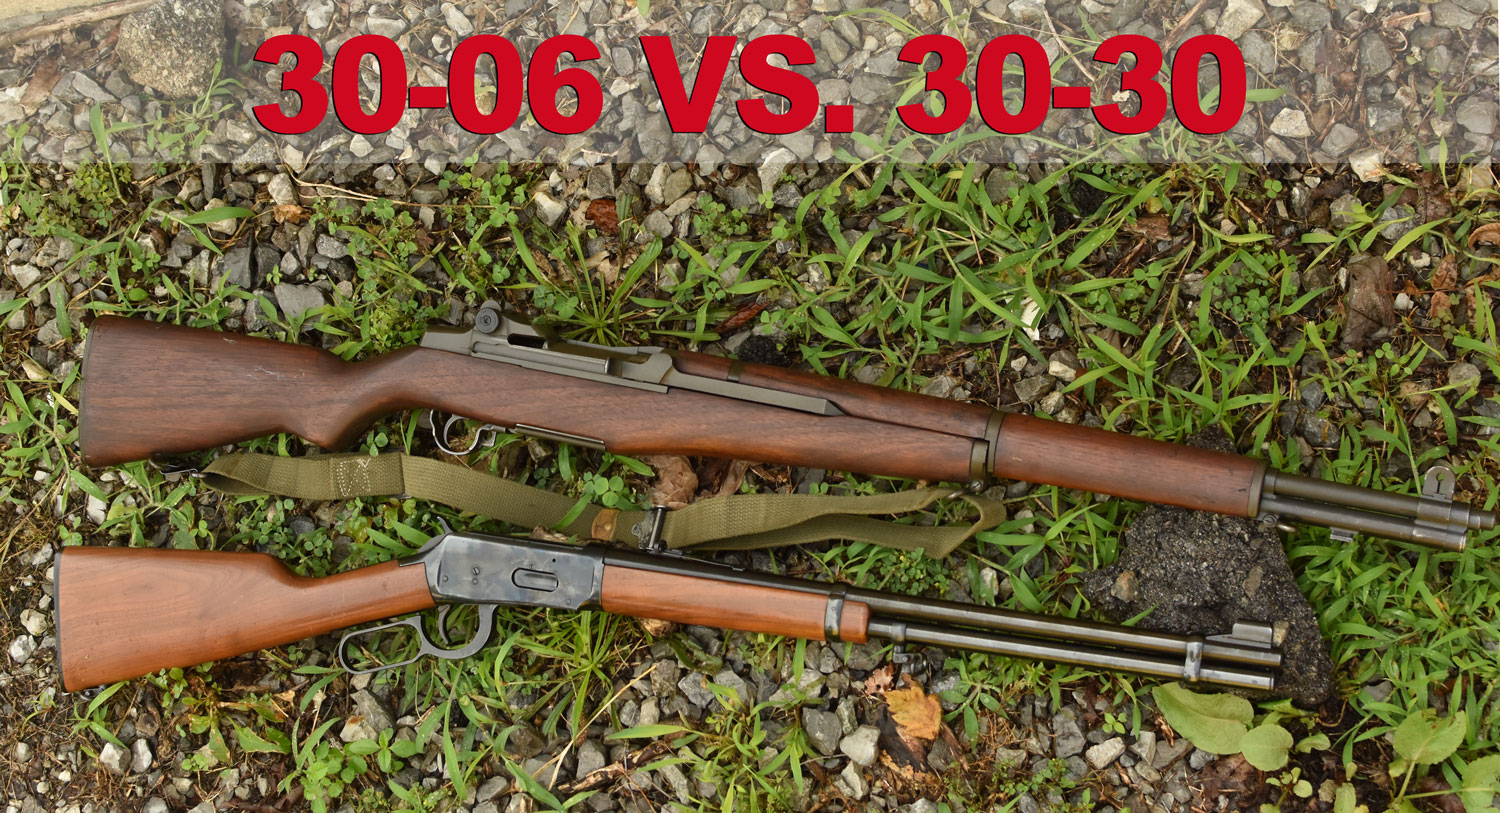 30-30 vs. 30-30 rifles